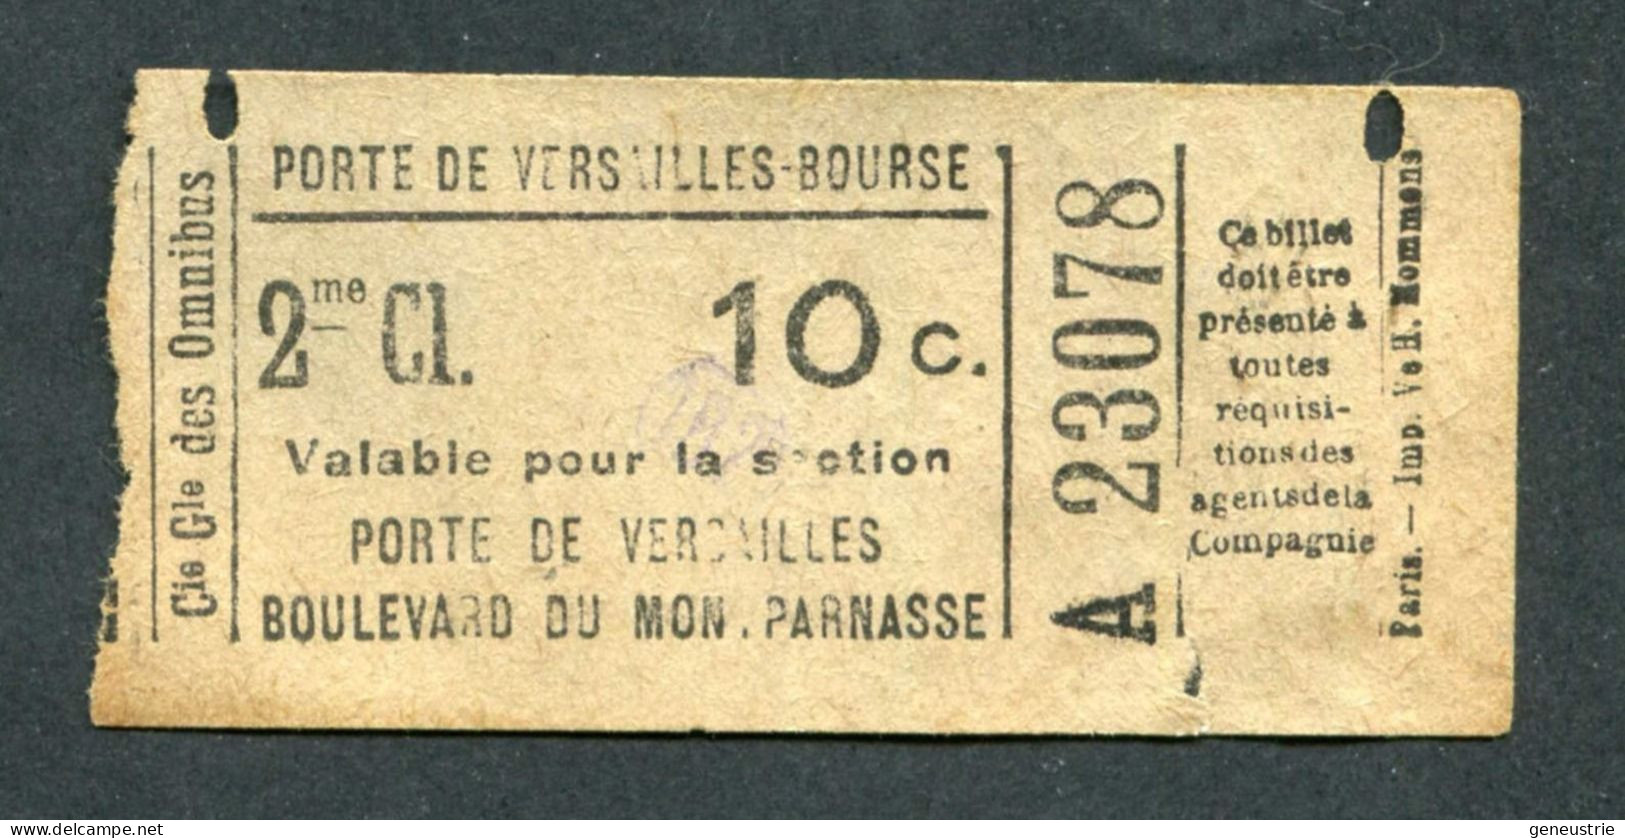 Ticket De Tramways - Compagnie Générale Des Omnibus (CGO) 2e Classe 10c - Paris" Tramway - Porte De Versailles - Europa